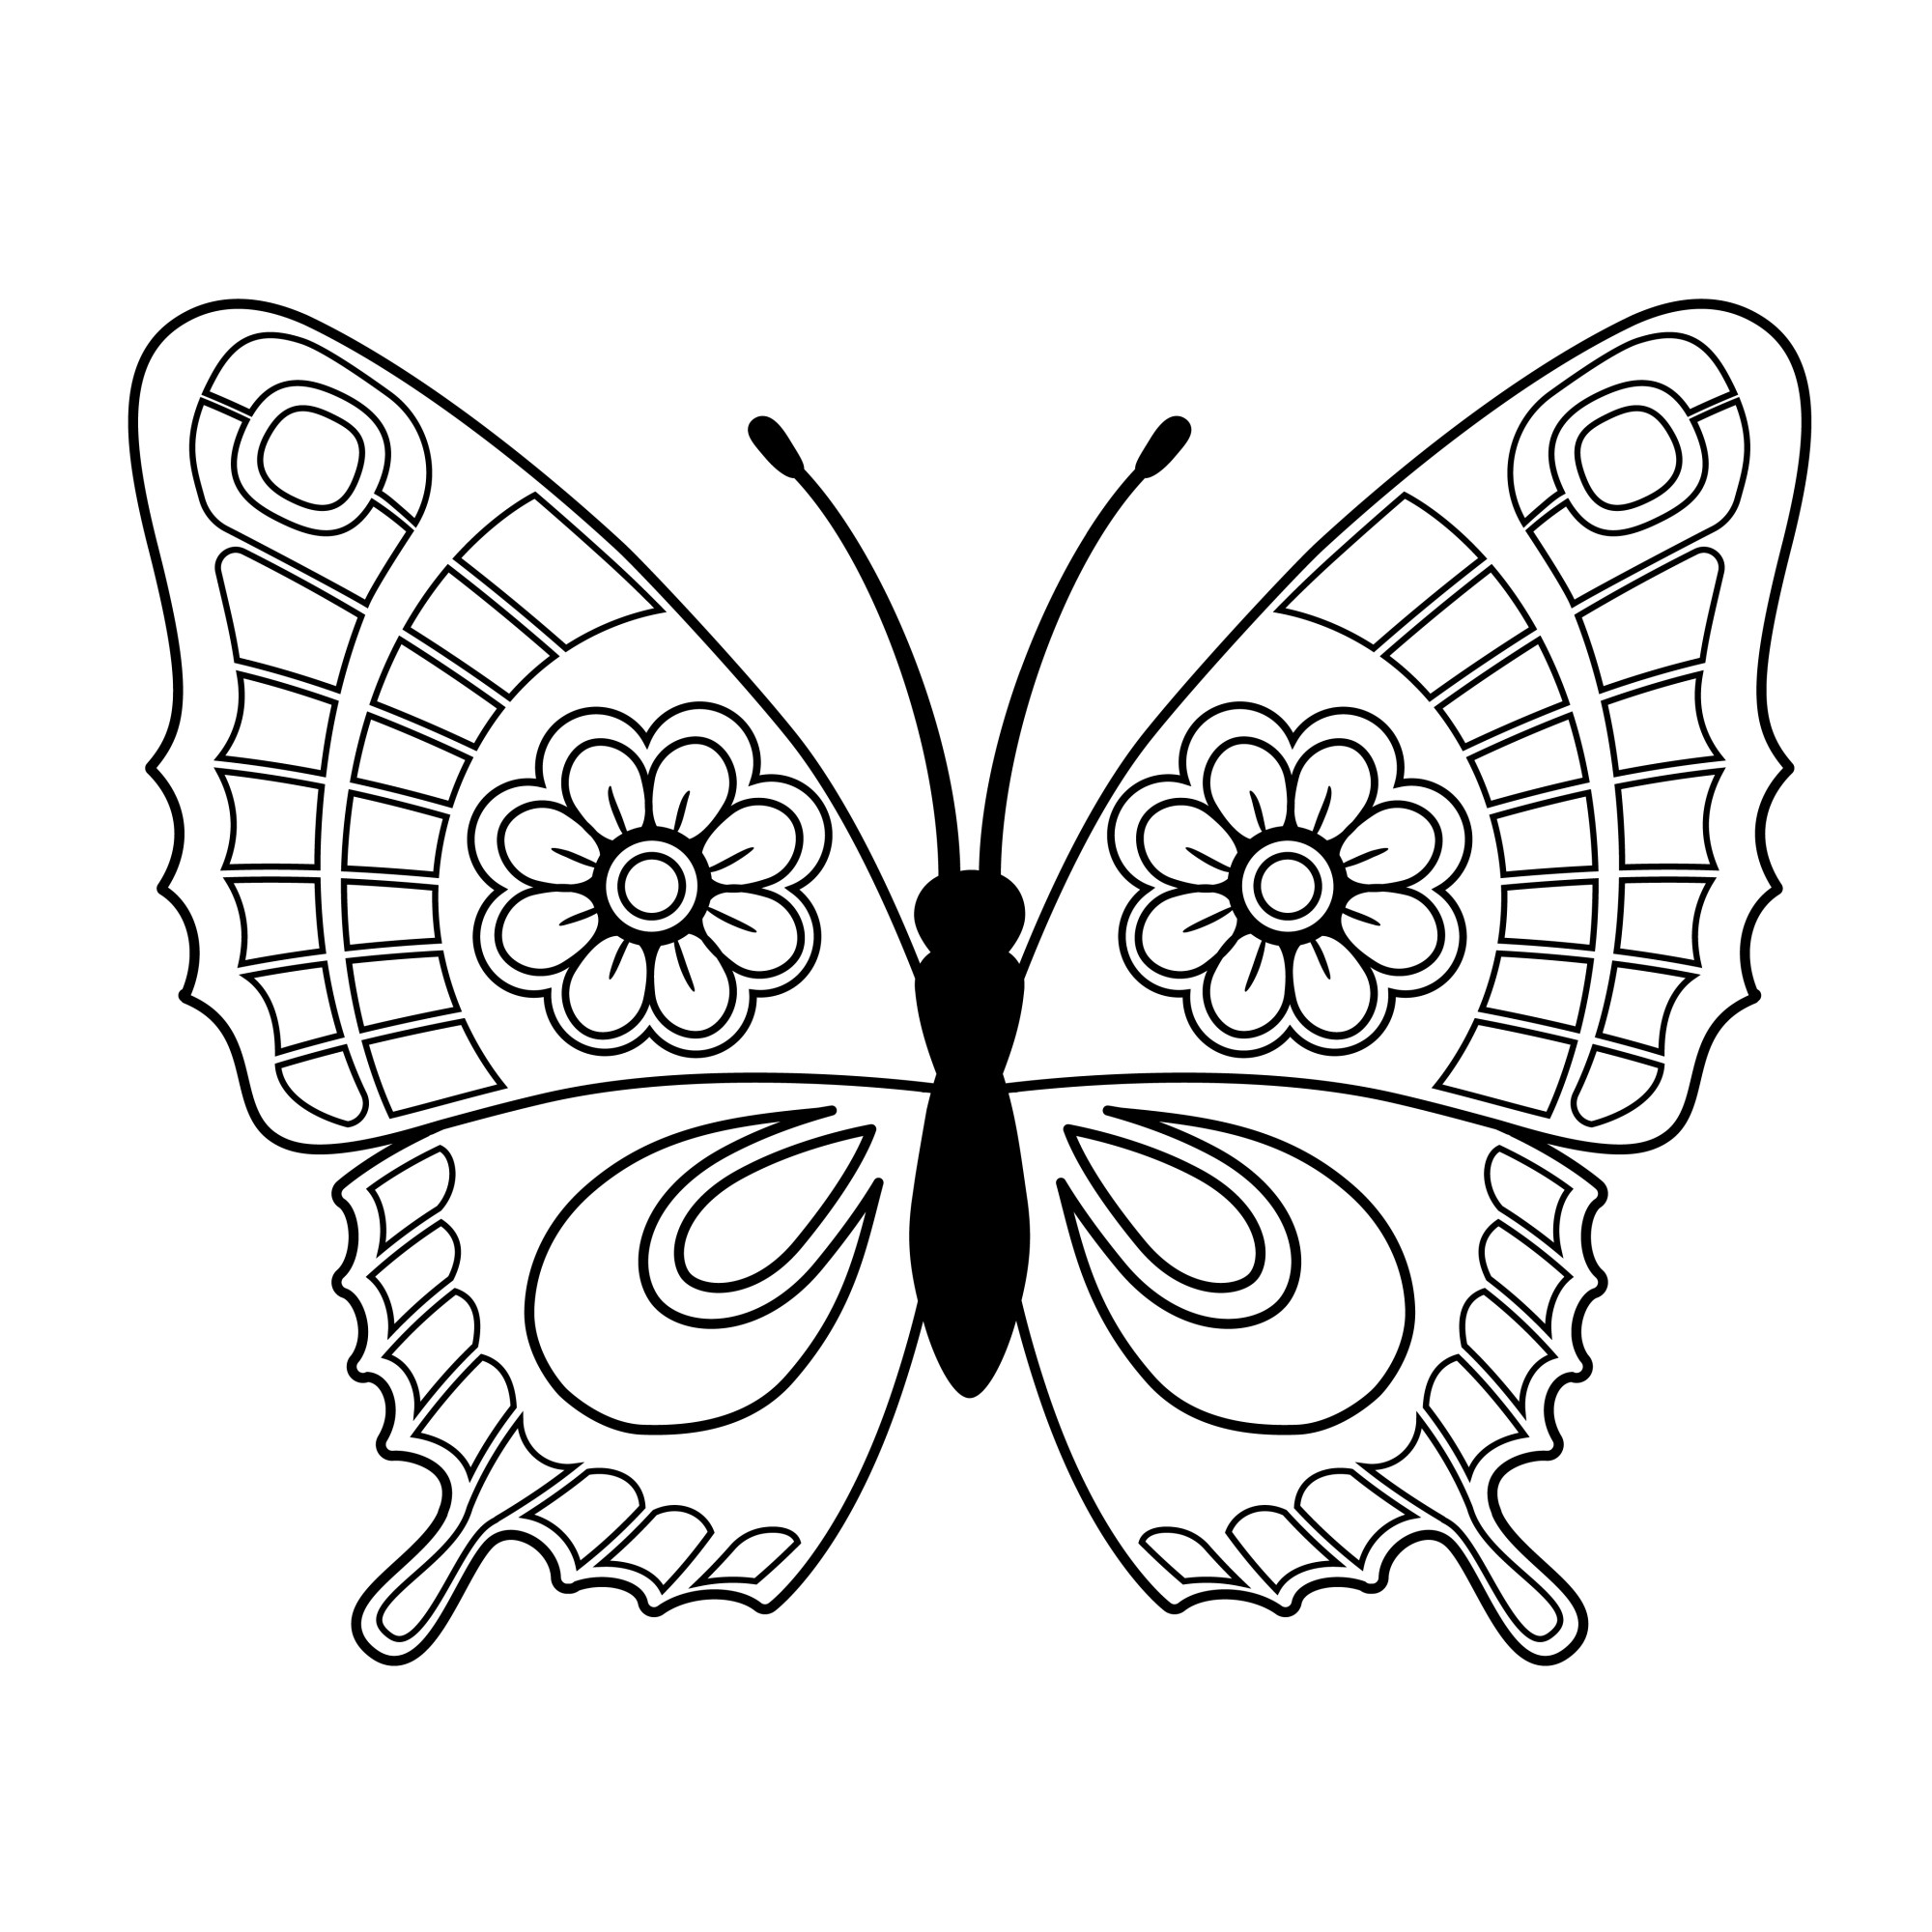 Раскраска для детей: силуэт бабочки с цветами на крыльях